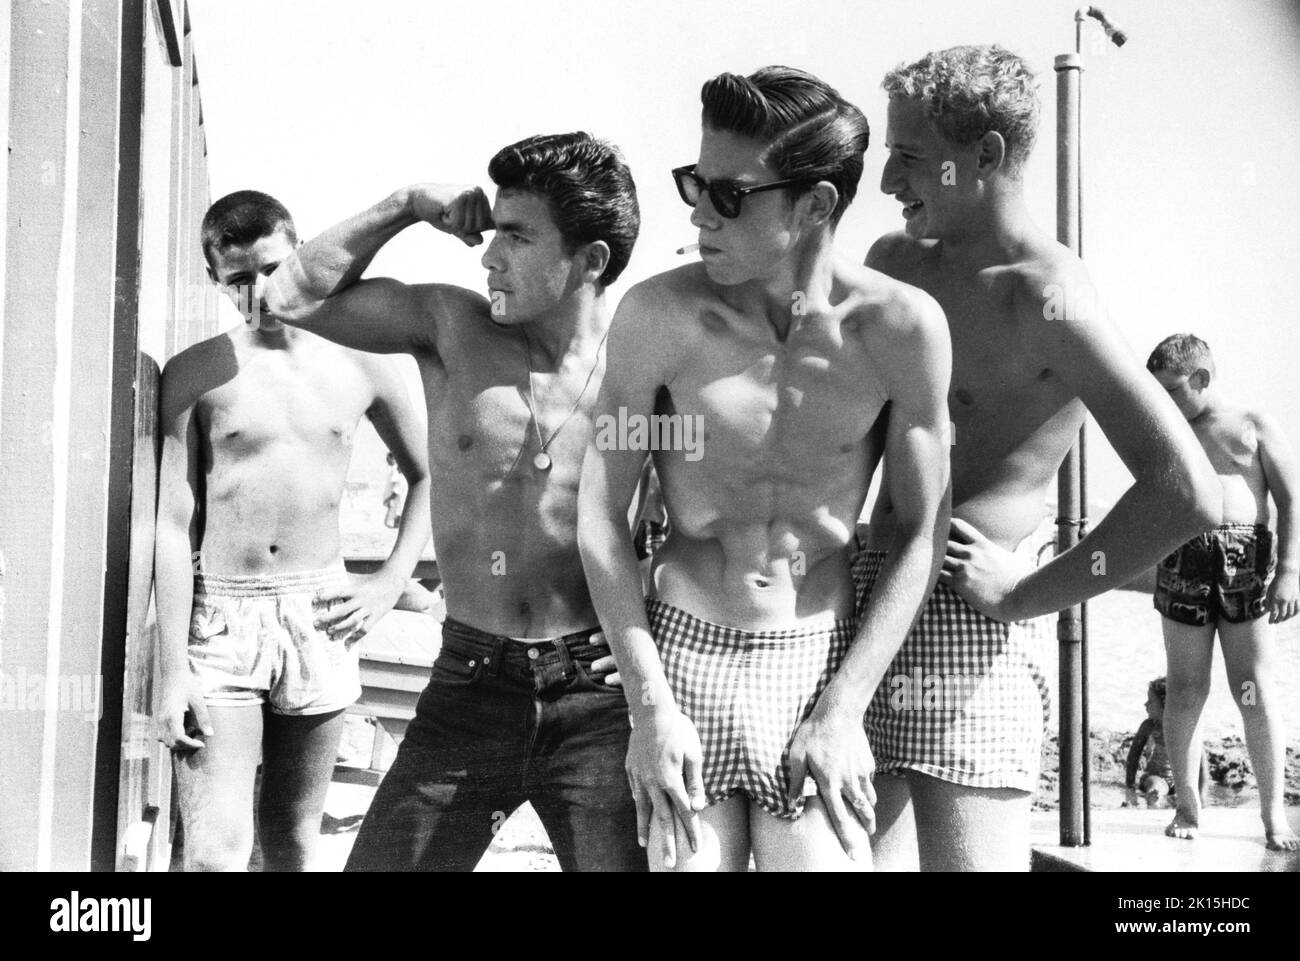 Santa Monica, Californie.Pendant votre séjour à la plage, un groupe de garçons admirent leurs muscles. Banque D'Images